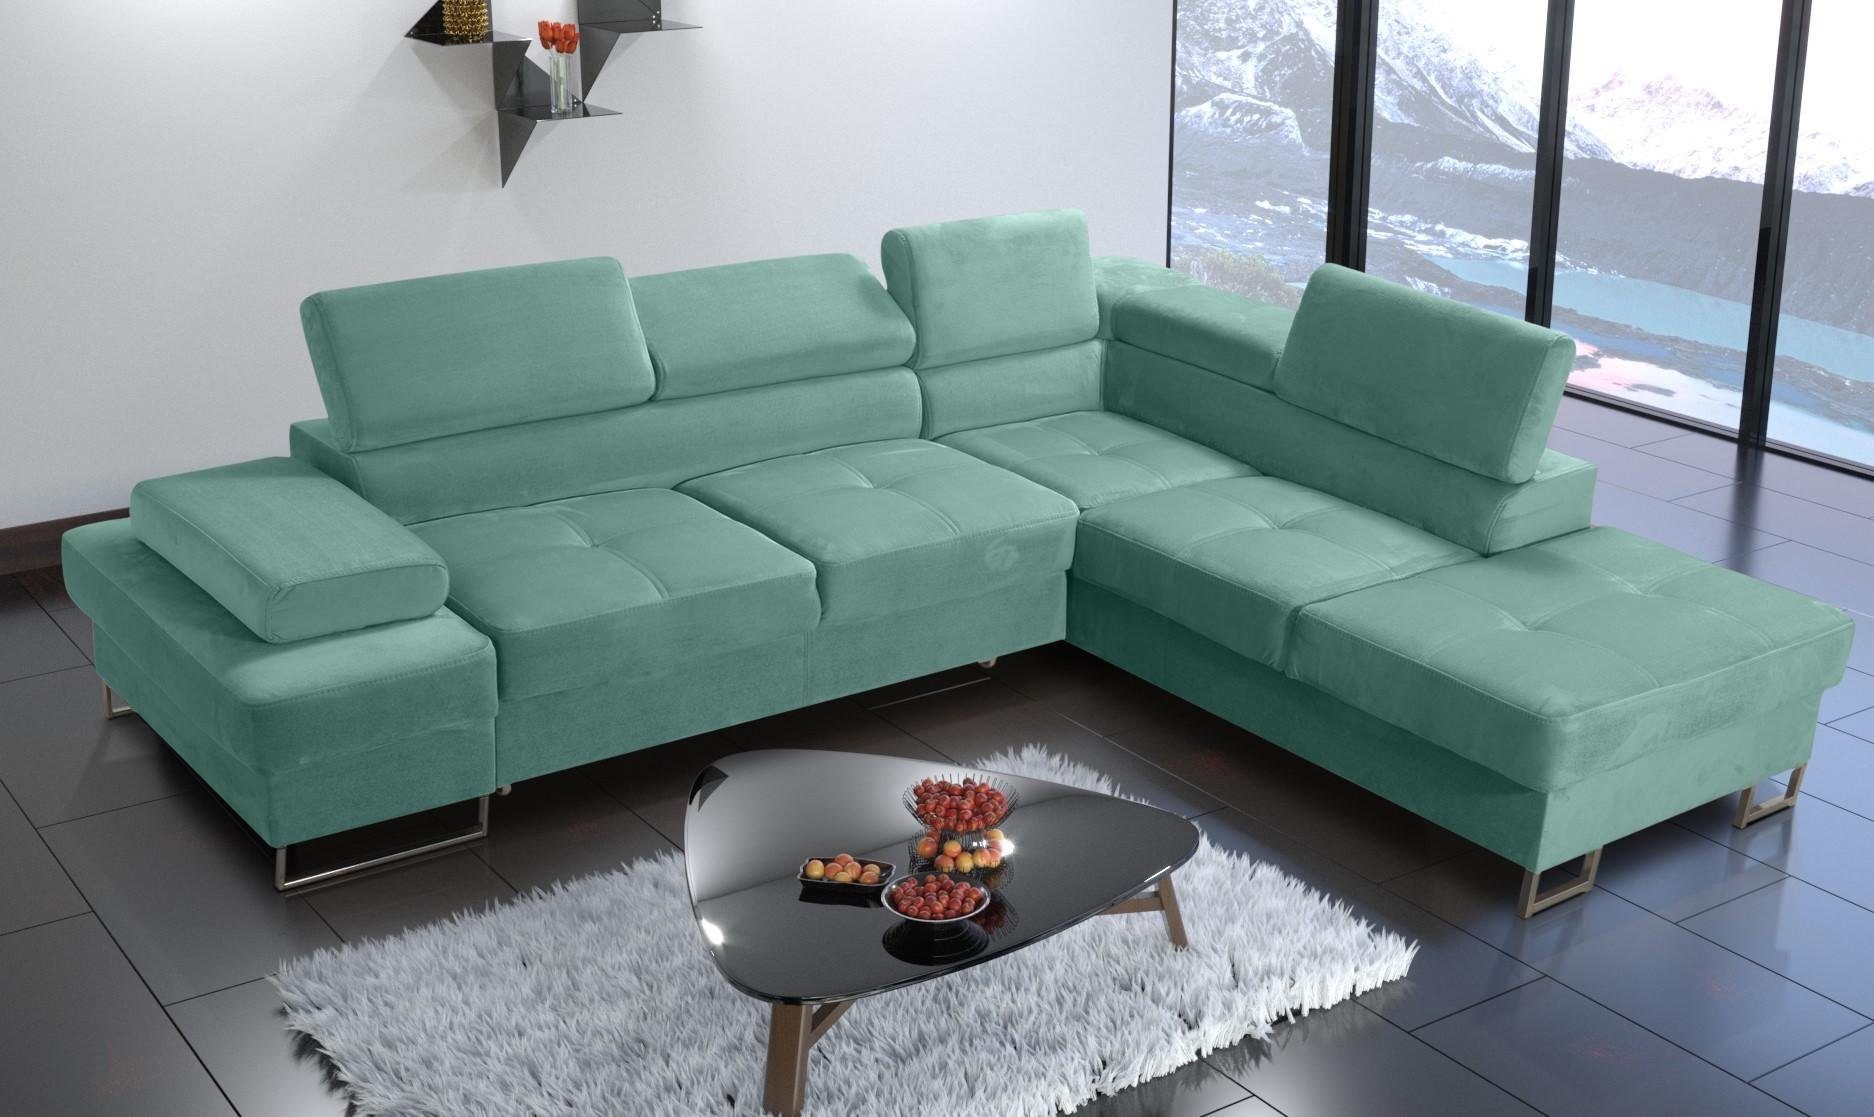 JVmoebel Ecksofa, Modern Wohnzimmer gelb Ecksofa L-Form Couch Textil Polsterung Grün